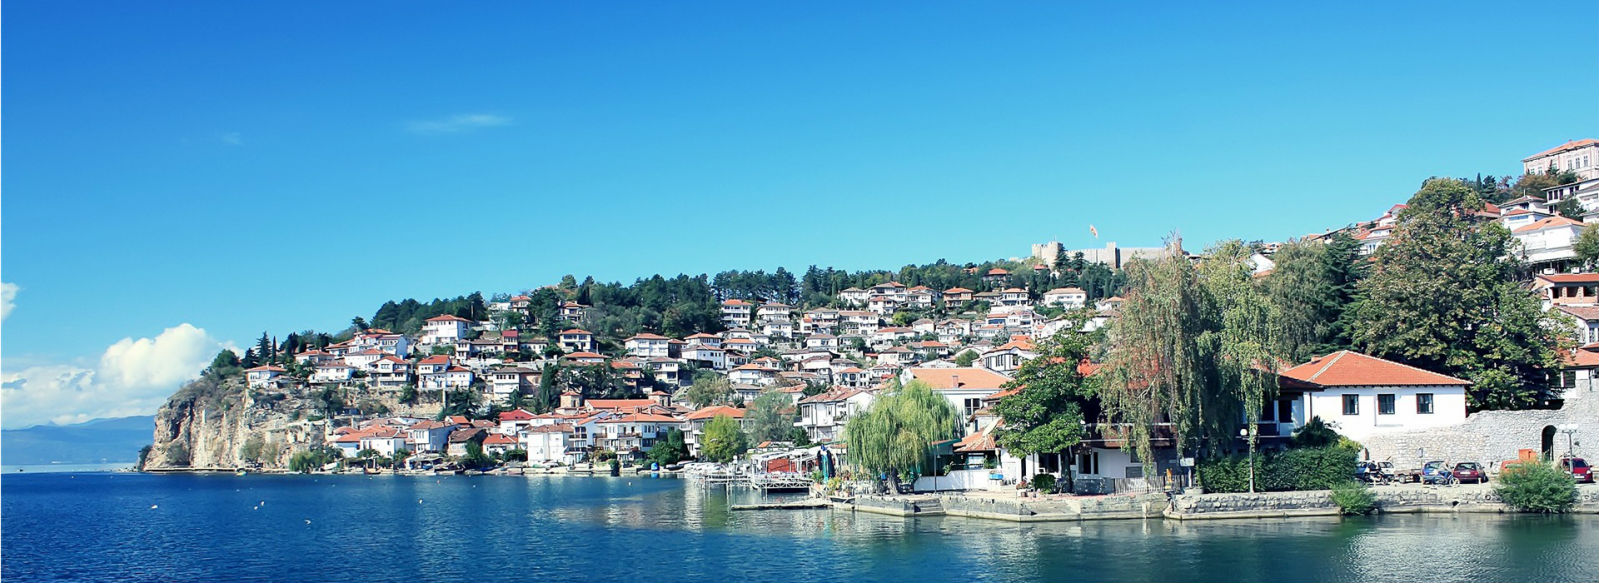 Ohrid City